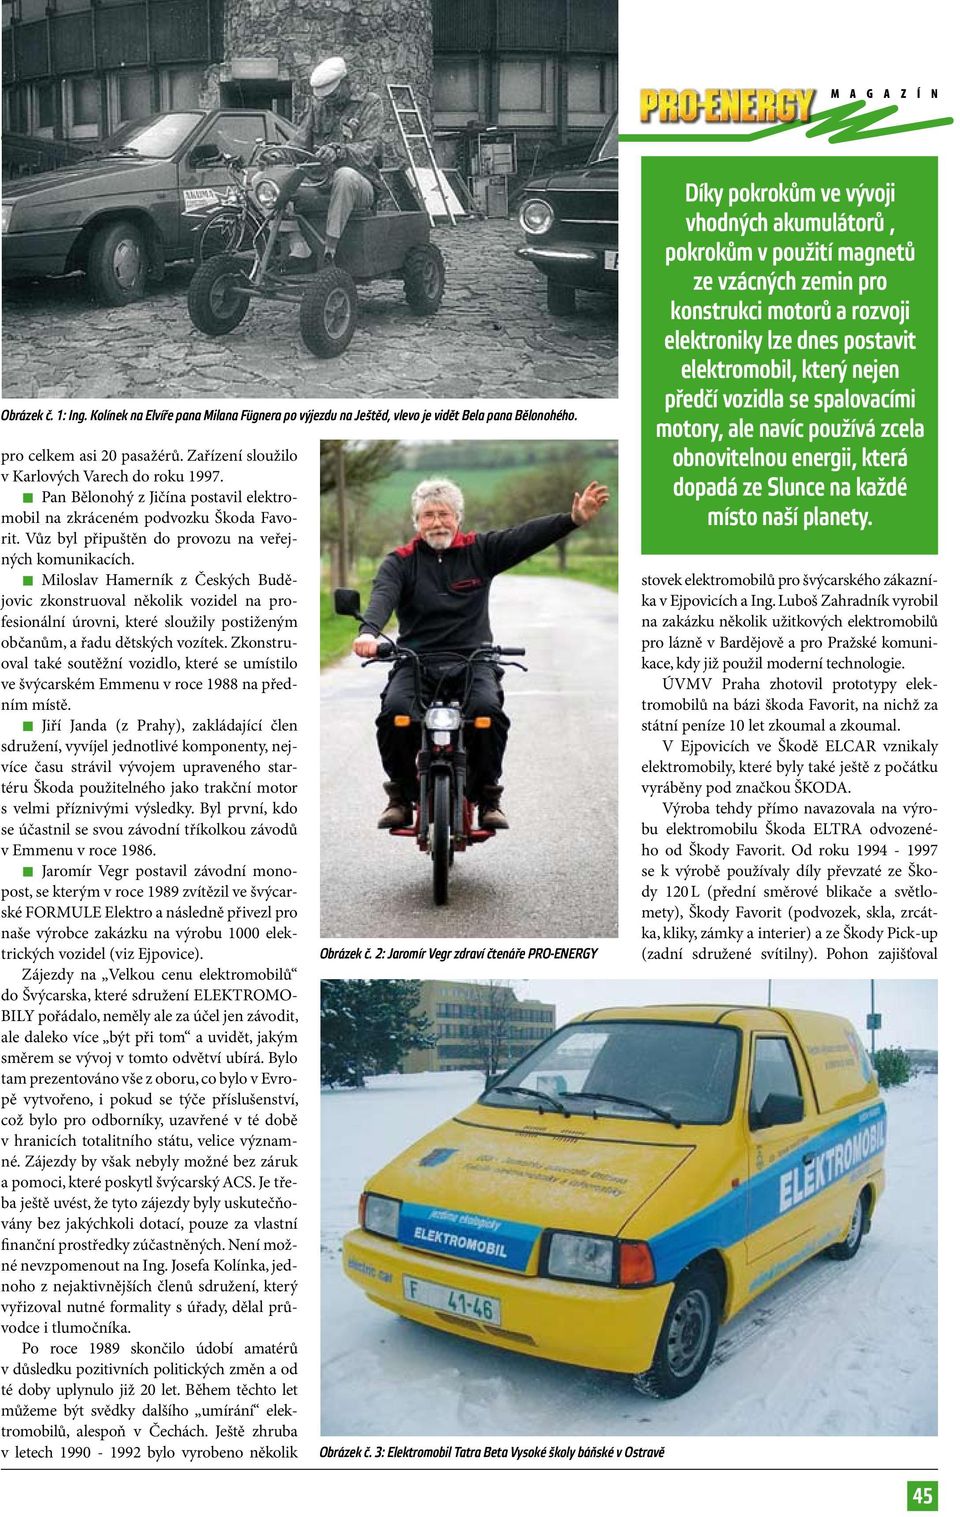 Miloslav Hamerník z Českých Budějovic zkonstruoval několik vozidel na profesionální úrovni, které sloužily postiženým občanům, a řadu dětských vozítek.